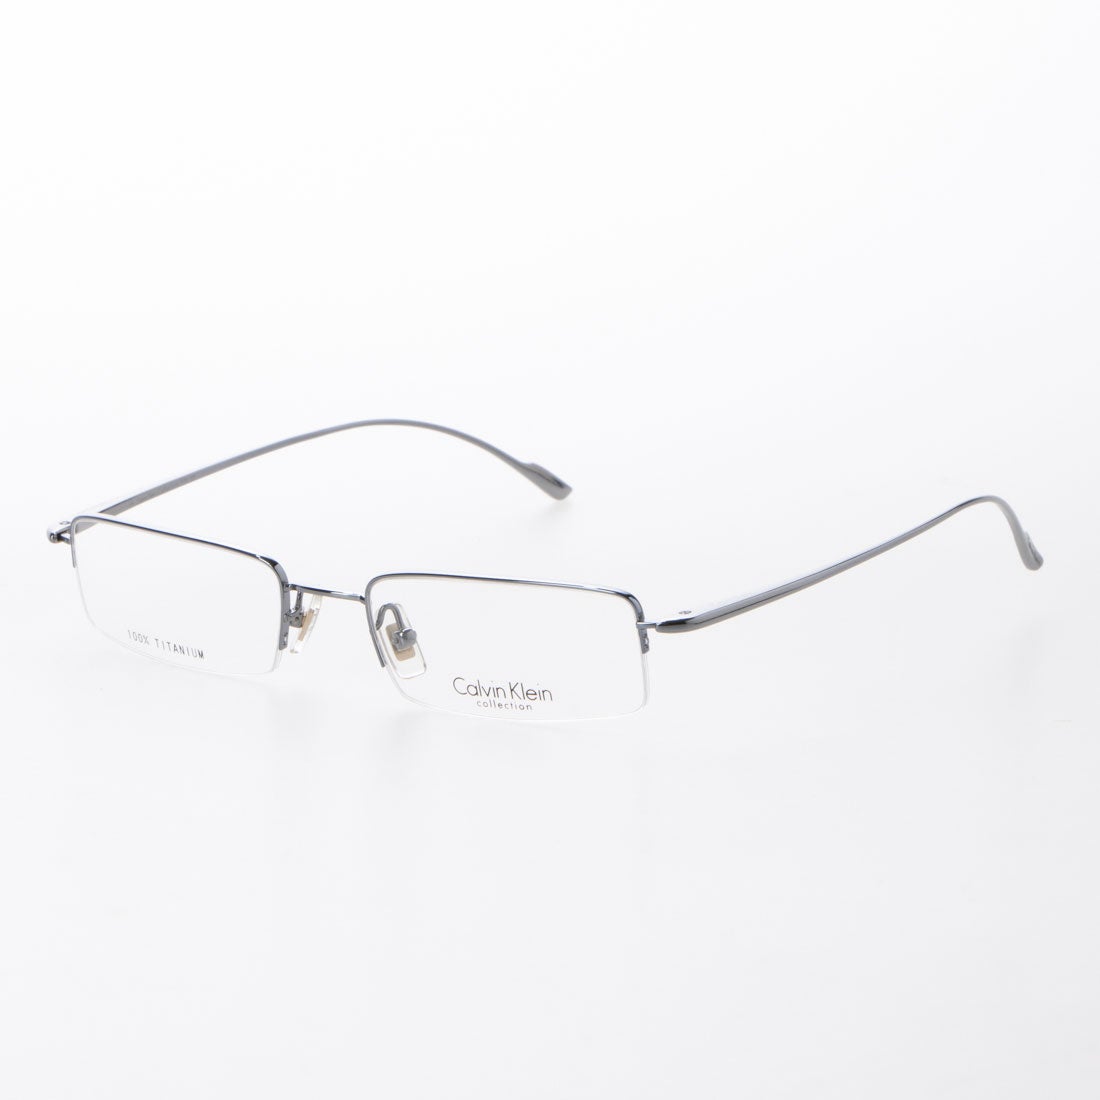 ◇高品質 カルバンクライン メガネ